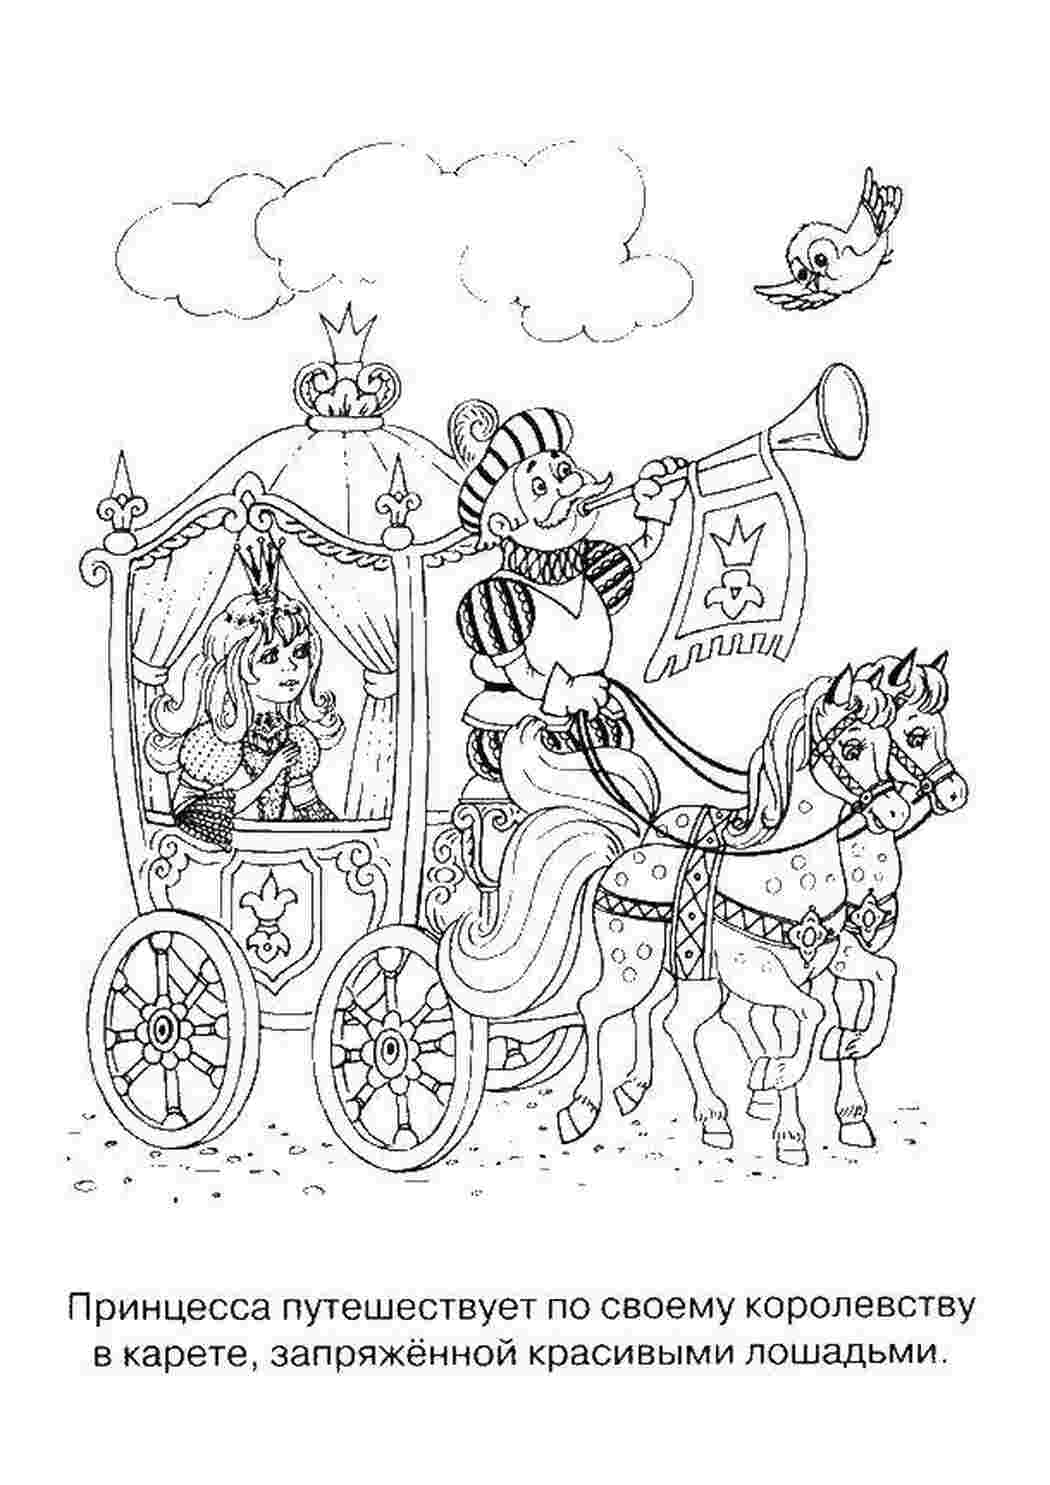 Раскраски Принцесса в карете Принцессы принцесса, девочка, карета, лошади